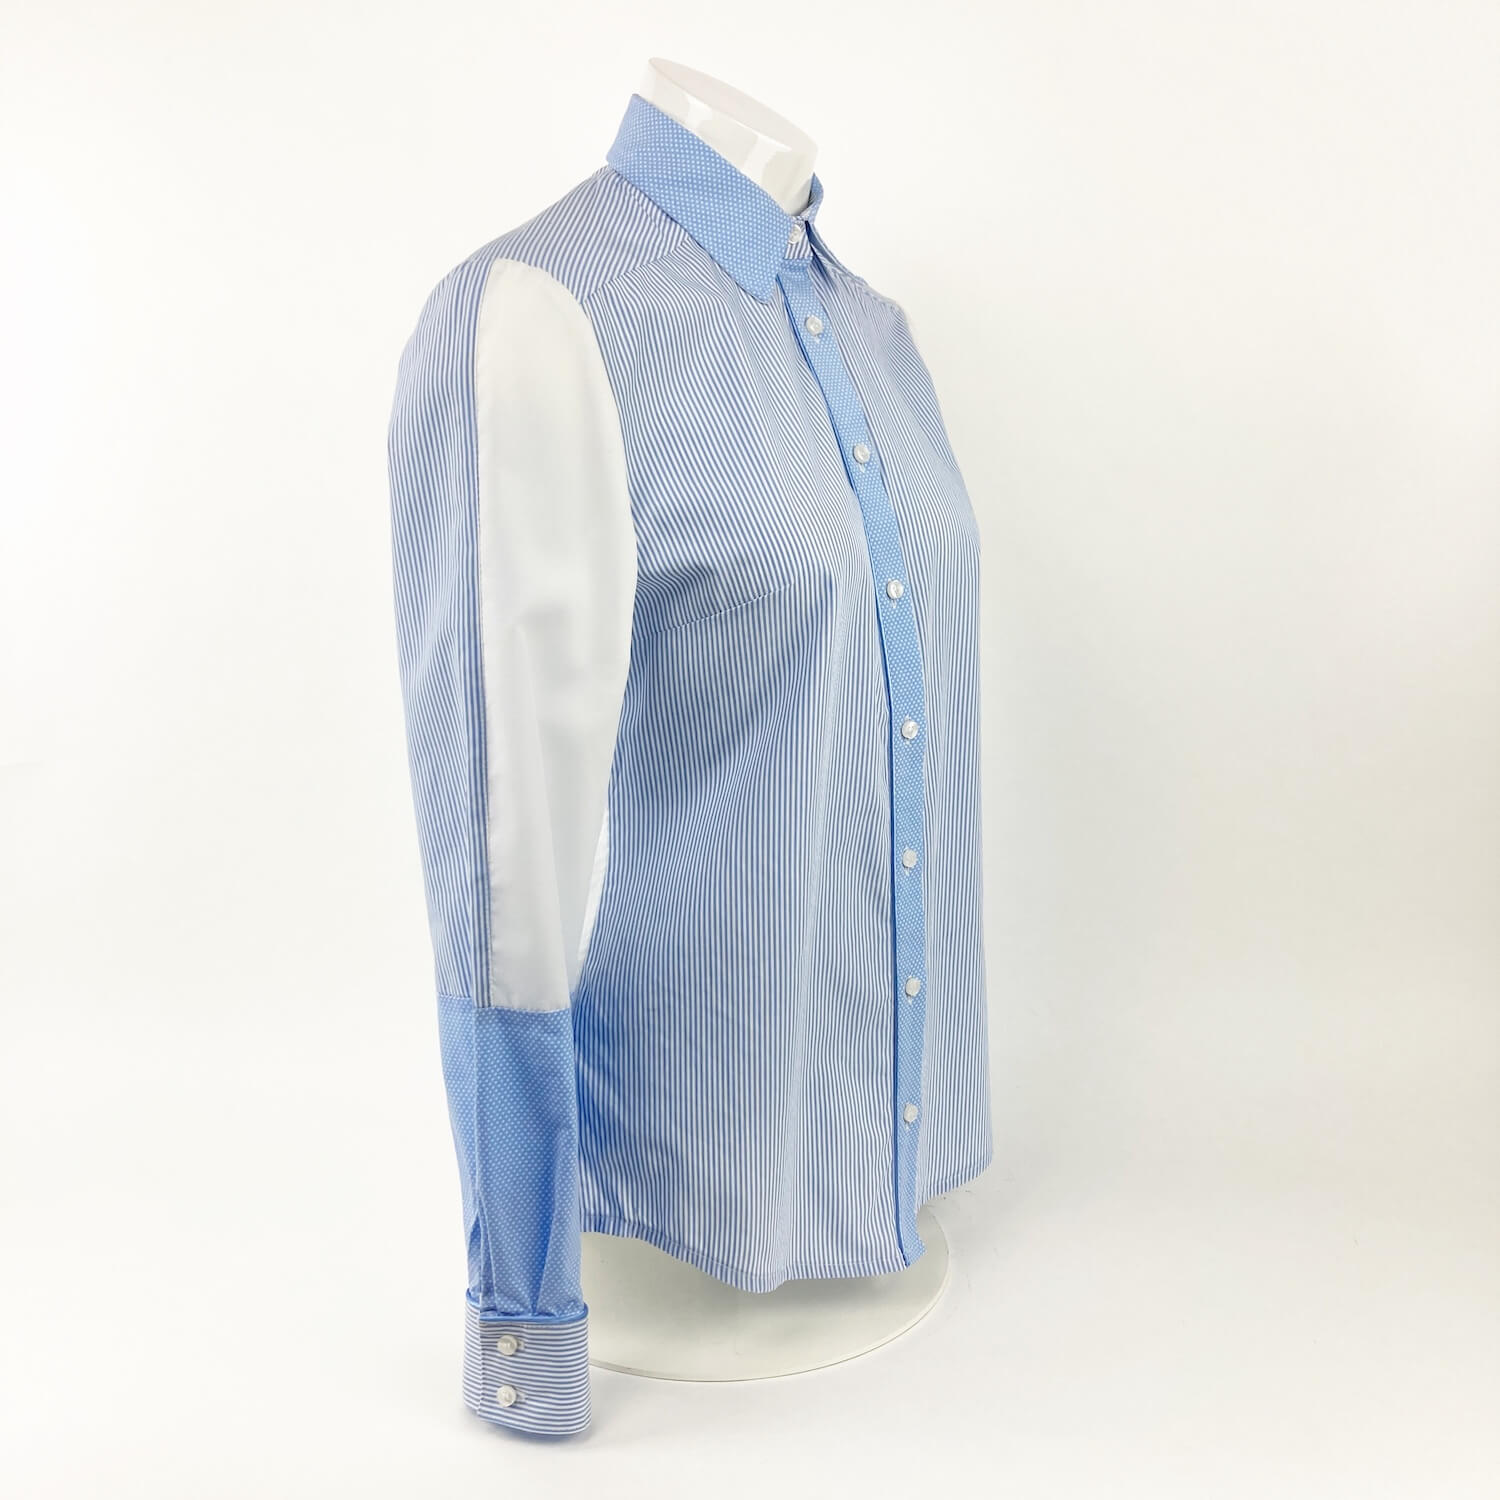 Klassische Bluse mit Streifen und Punkte Gr. 36 | Hemds Up